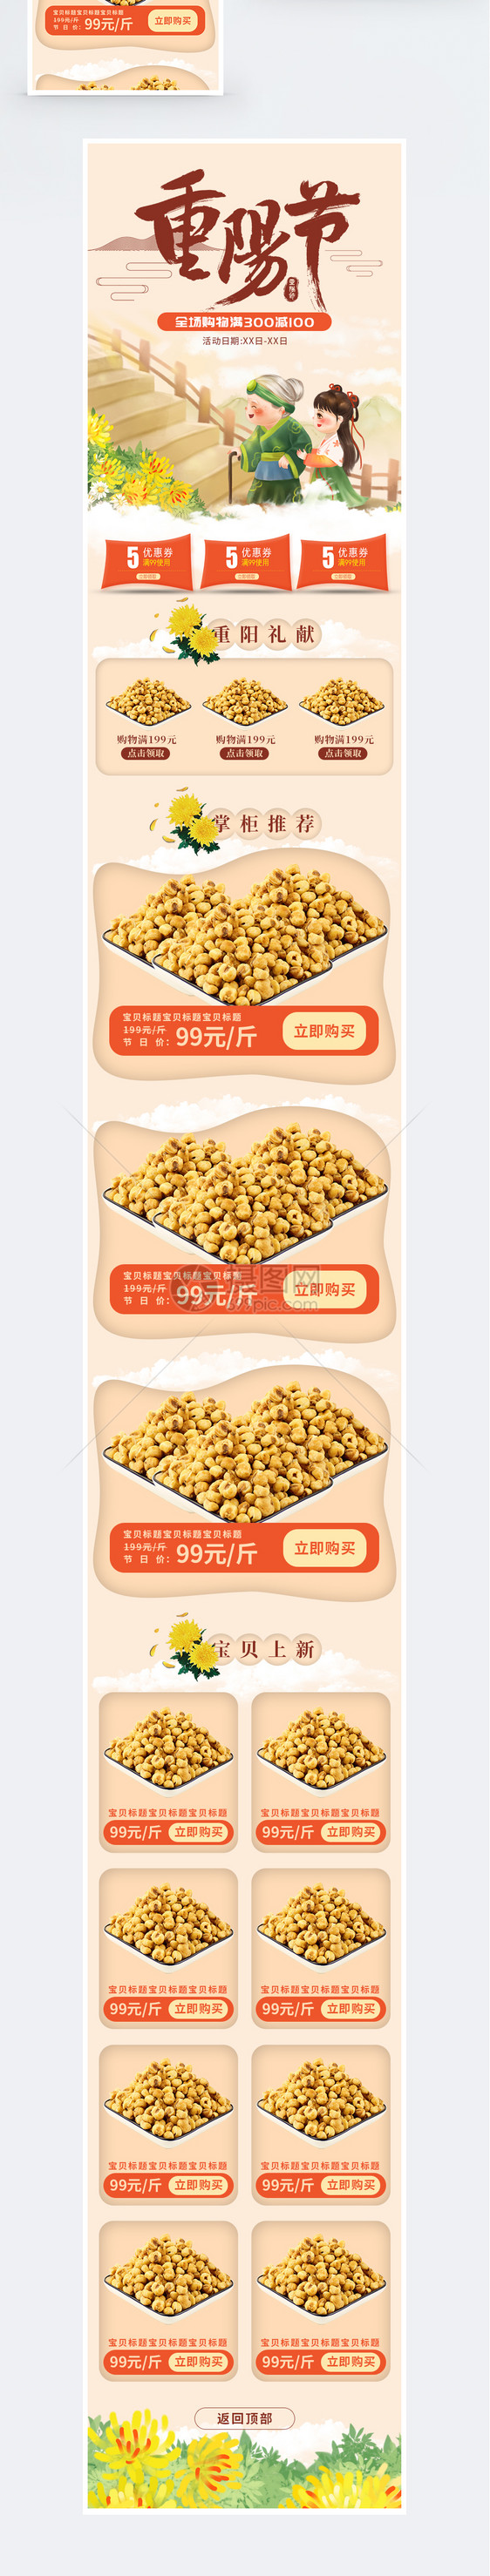 重阳节零食促销淘宝手机端模板图片